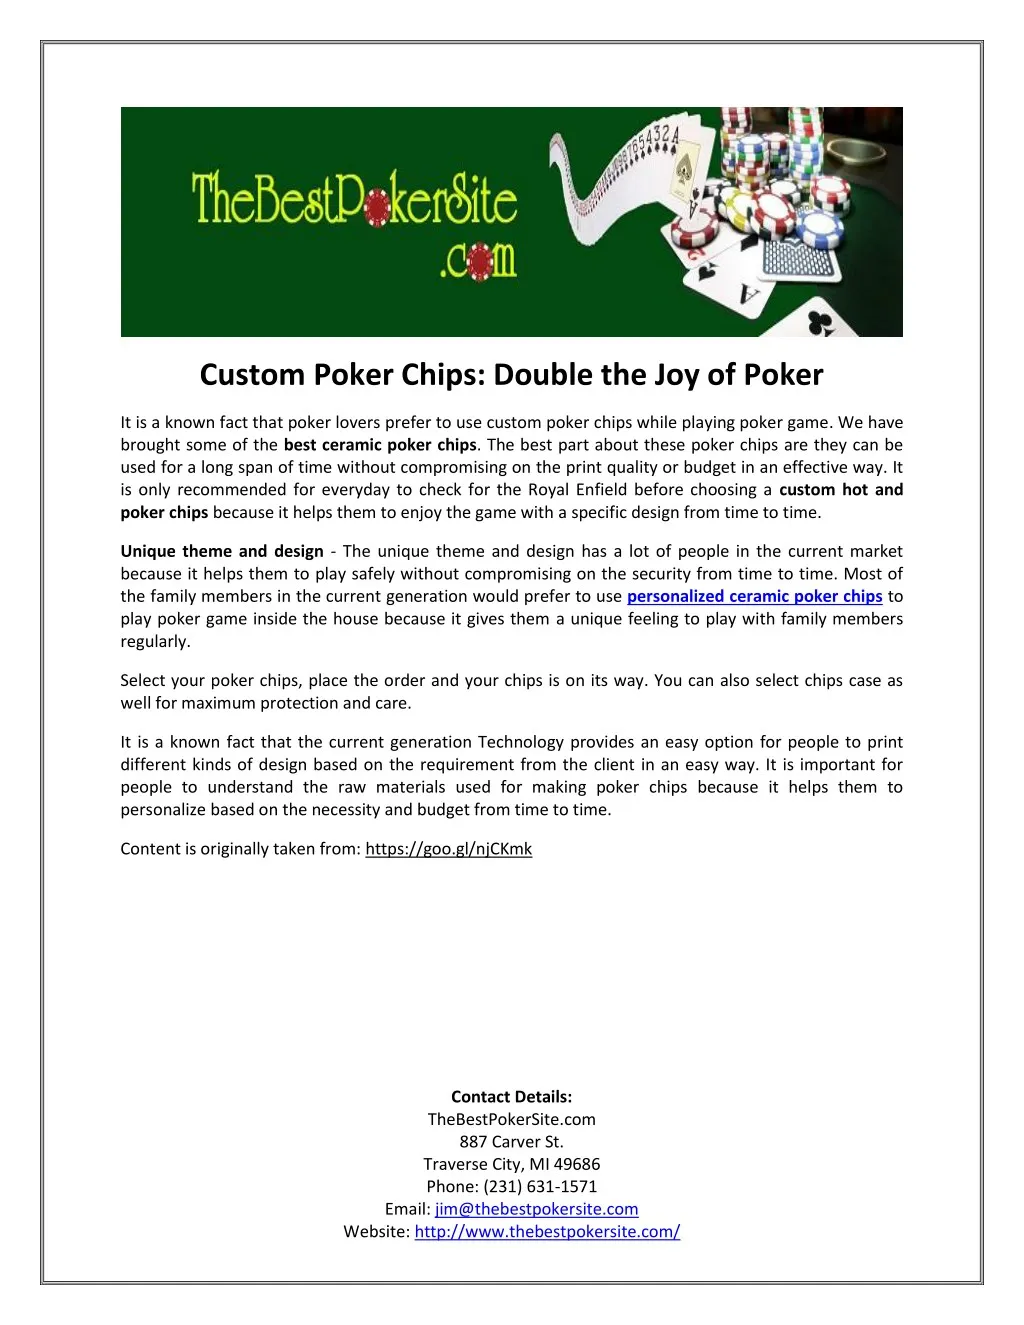 custom poker chips double the joy of poker